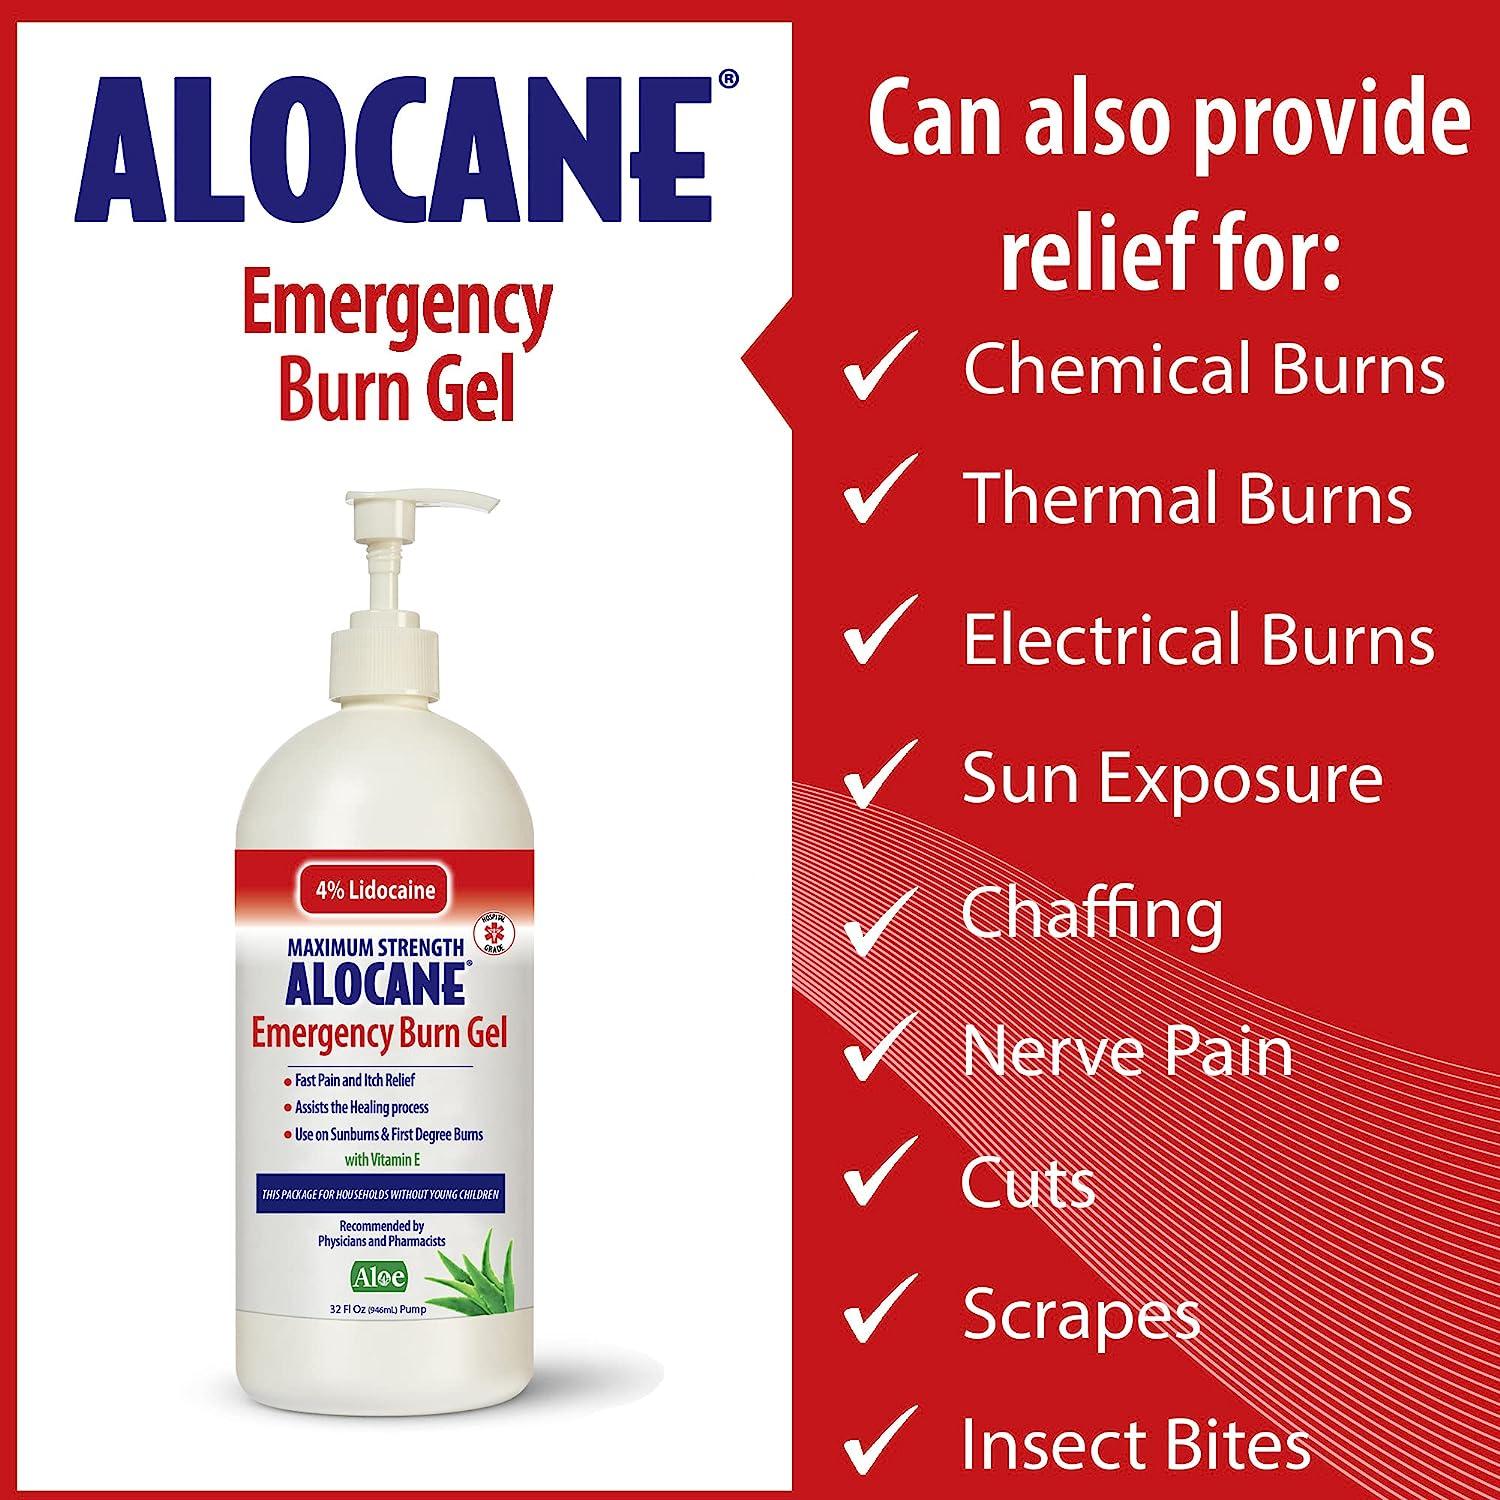 BUY Lidocaine Hydrochloride (Alocane Emergency Burn) 4 g/100mL